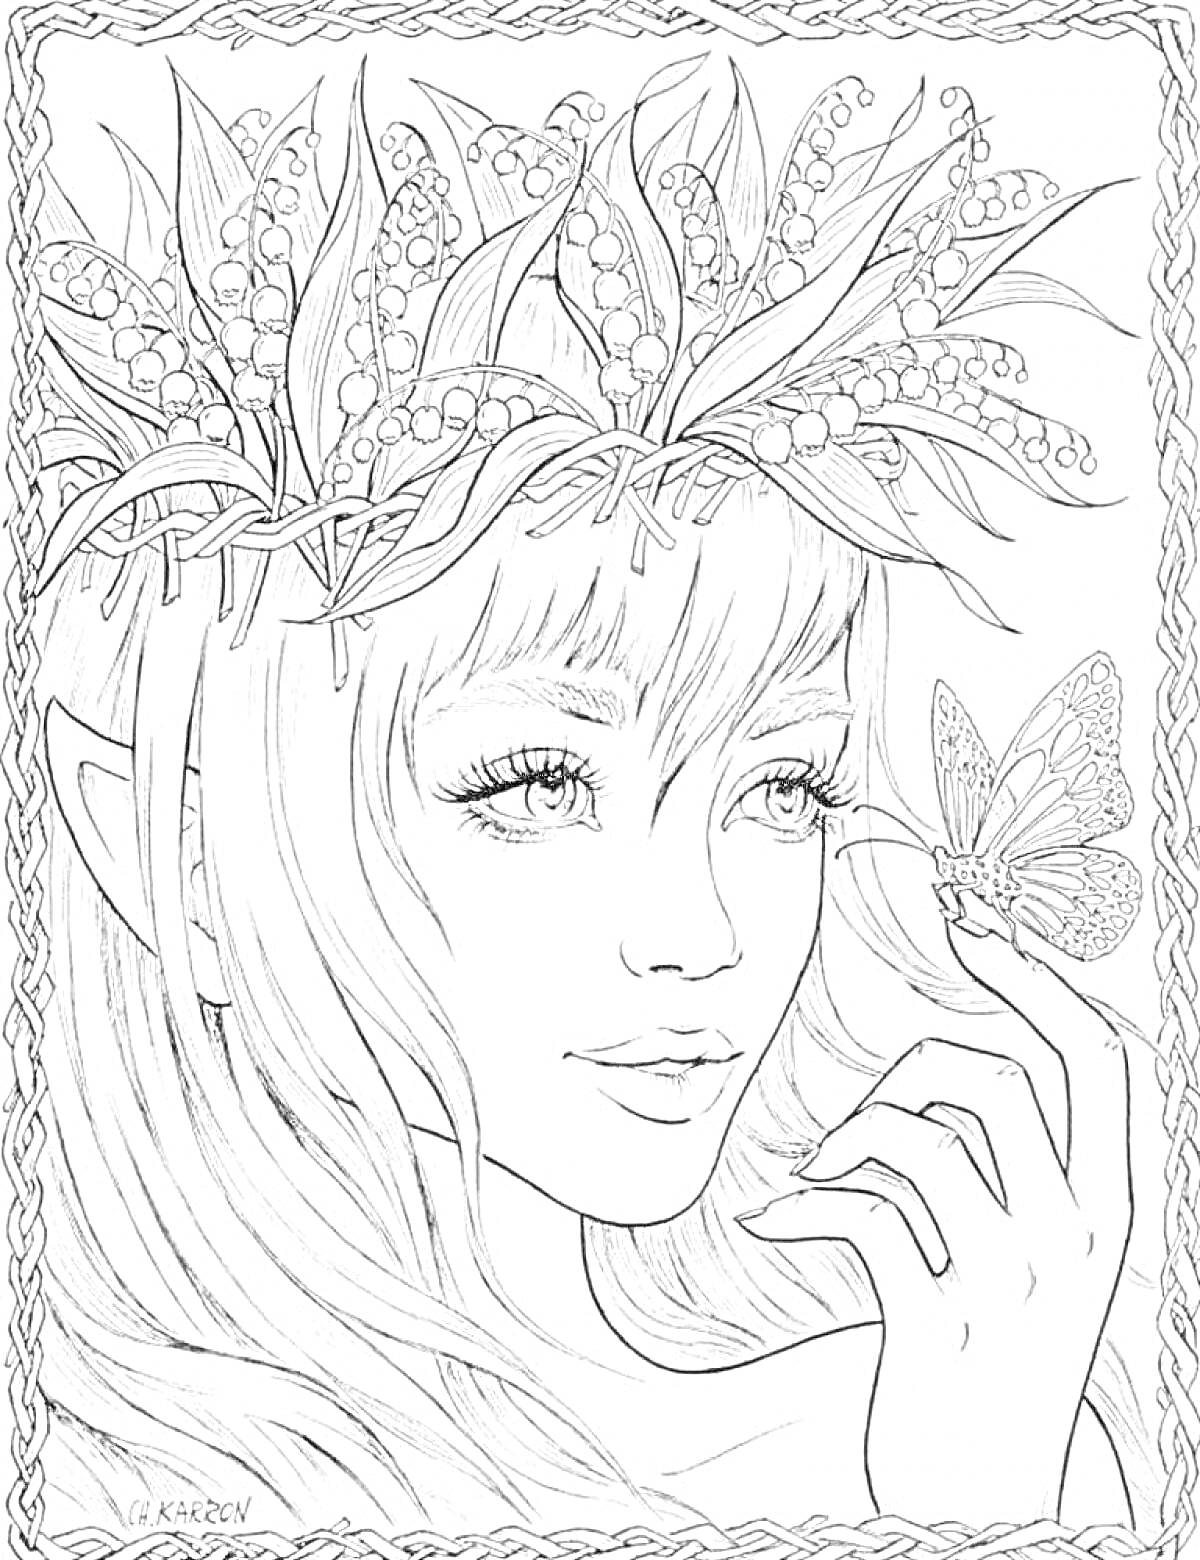 Раскраска Девушка с венком из листьев и ягод, бабочка на пальце